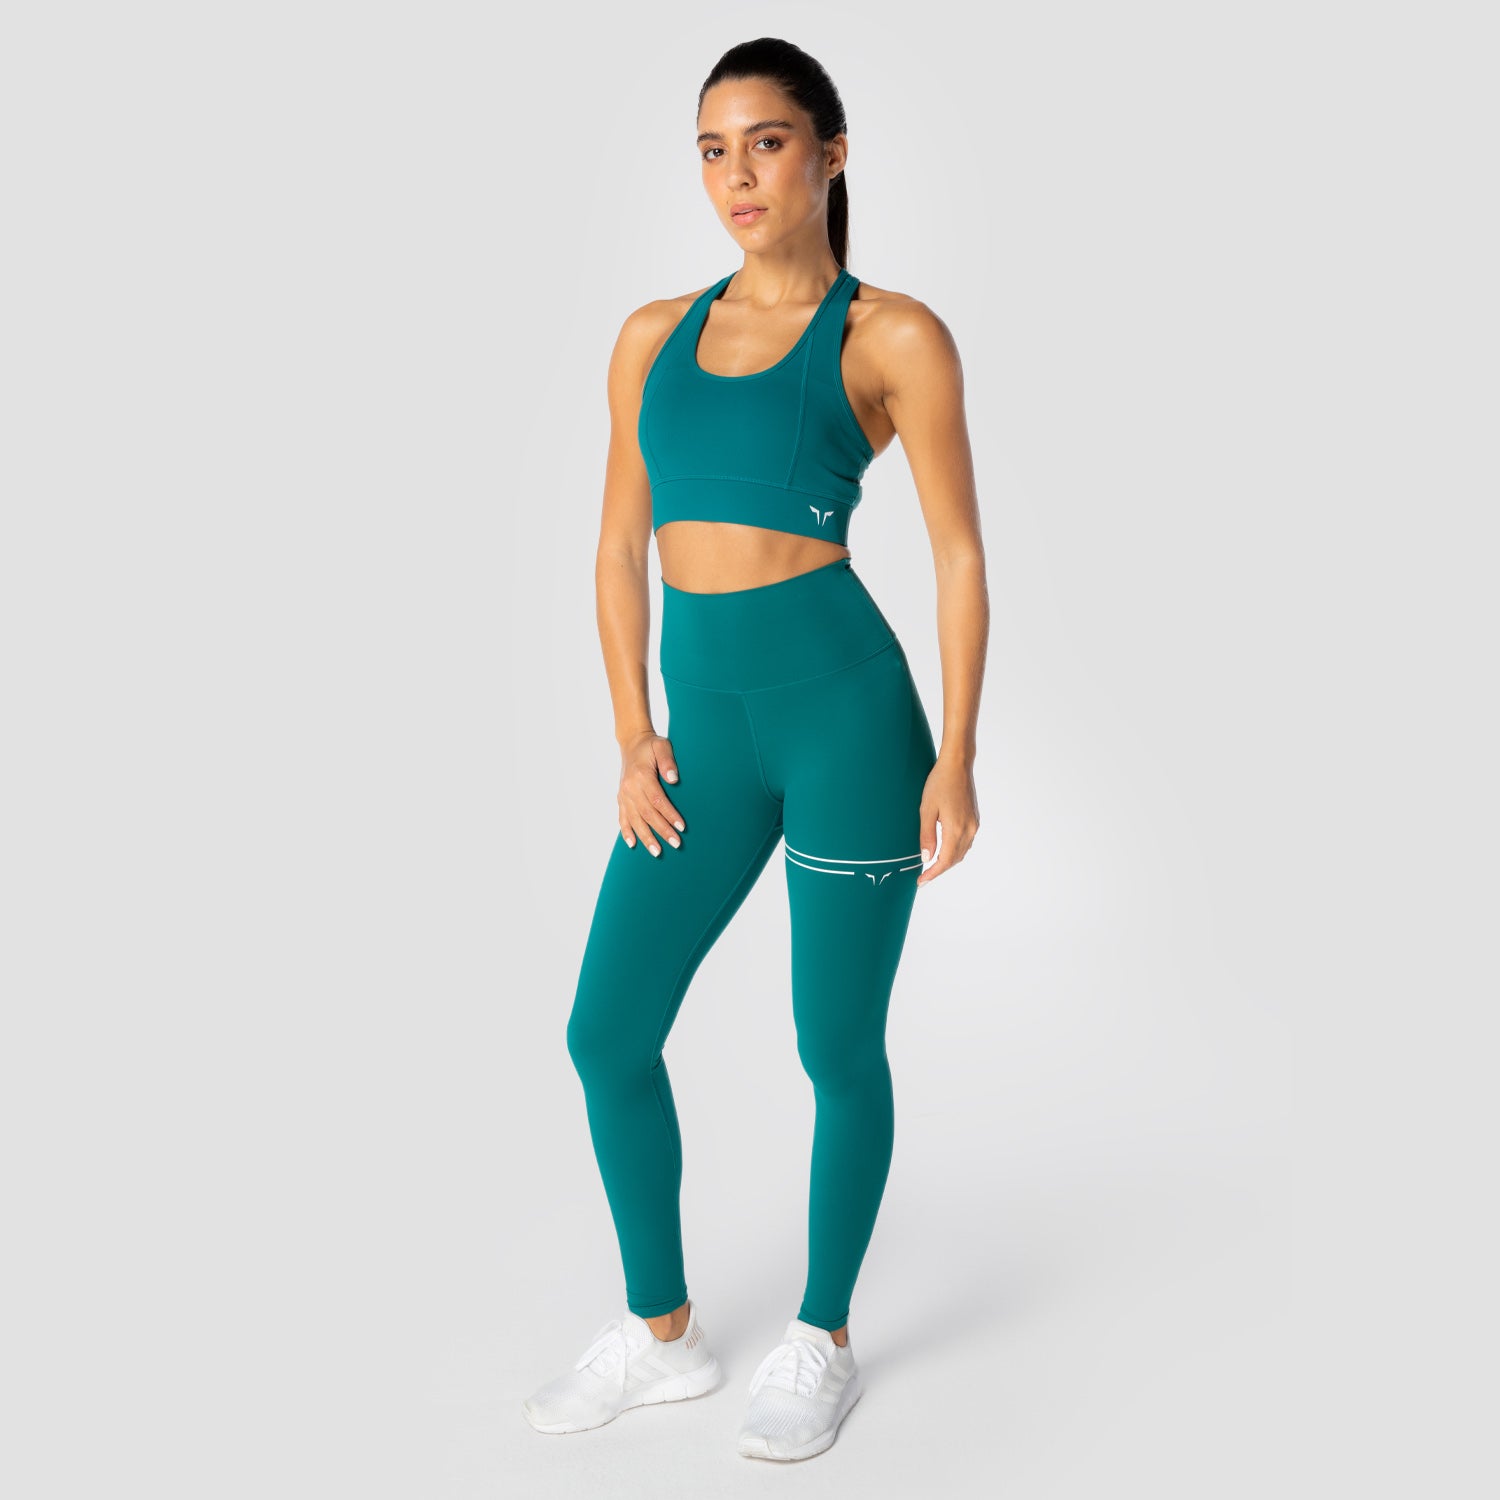 squatwolf-workout-clothes-flux-leggings-blue-gym-leggings-for-women